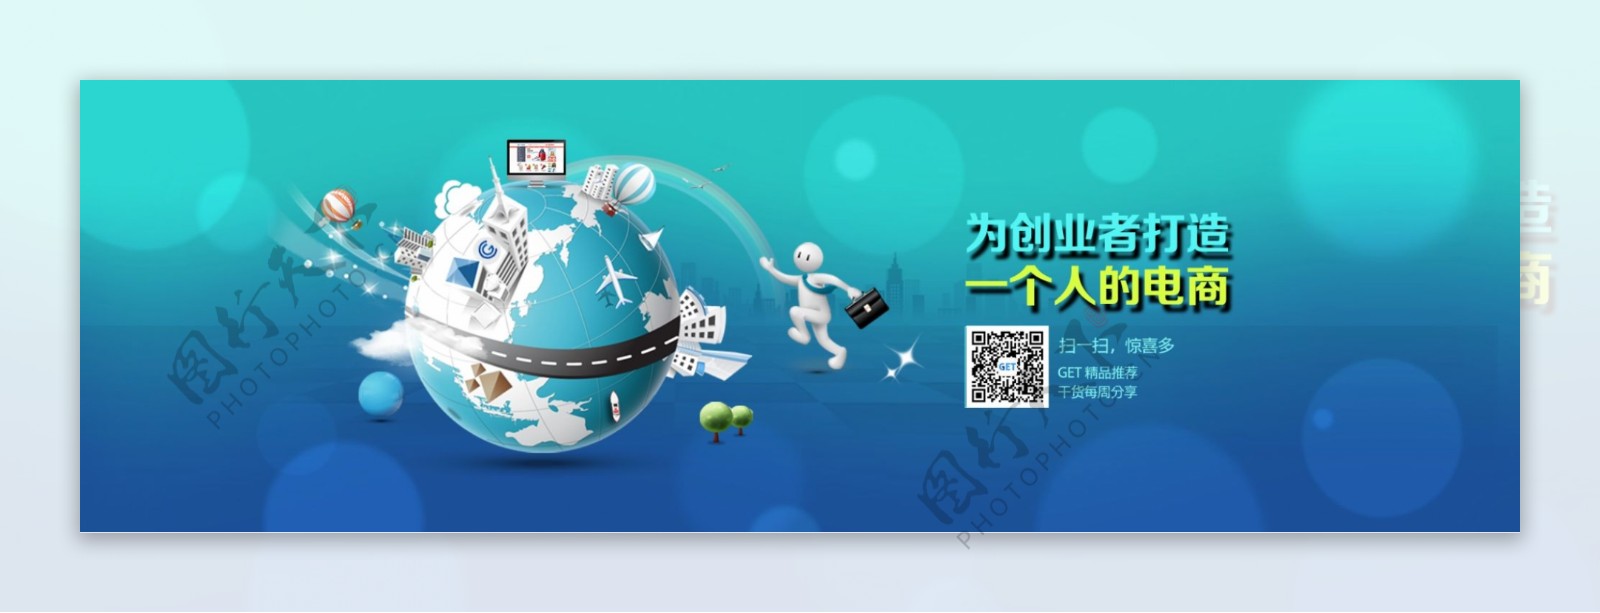 高清电商网站banner图